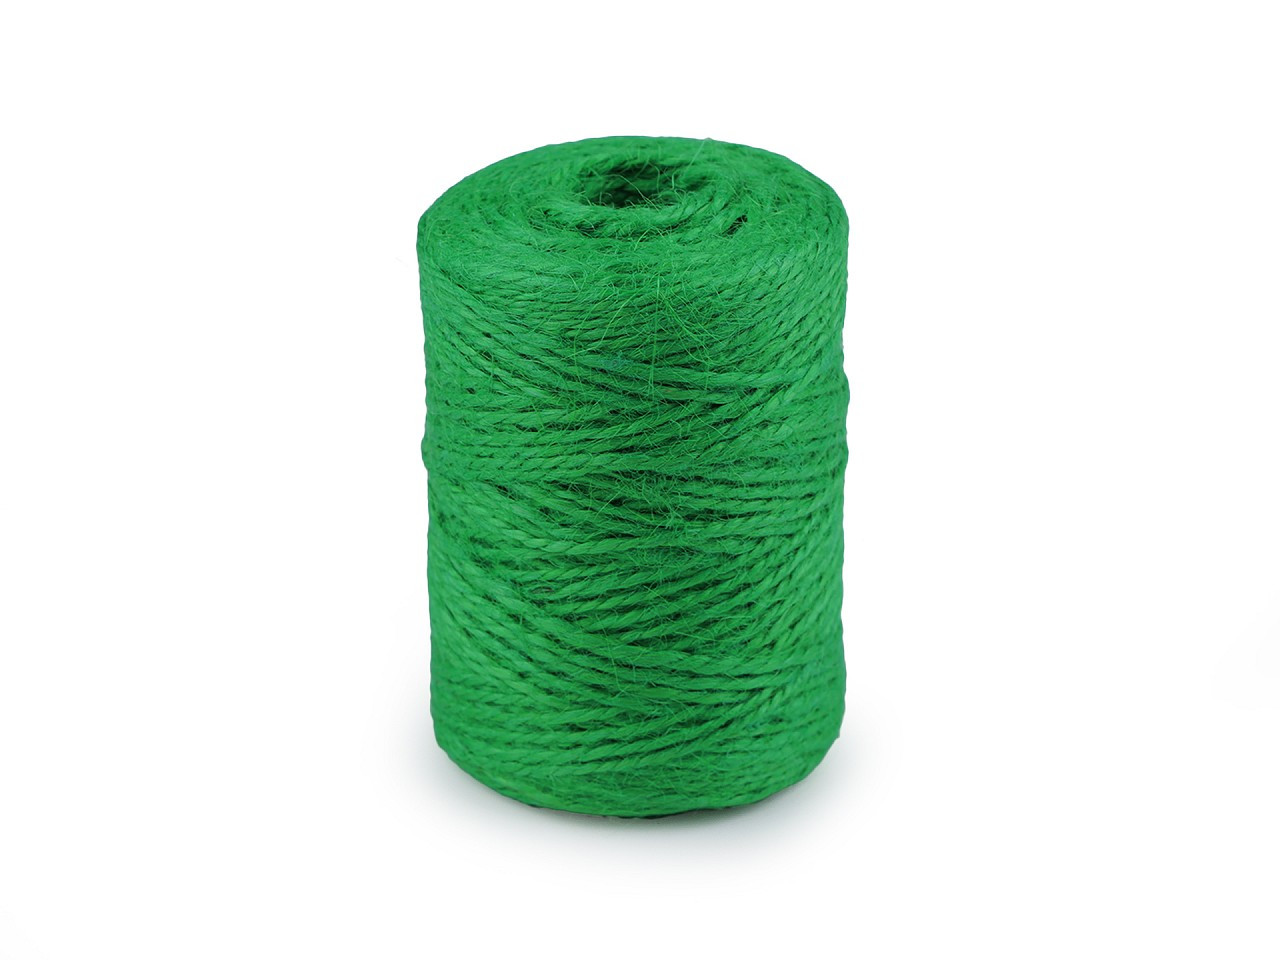 Jutový provázek Ø2 mm k pletení a háčkování i na balení, barva 5 zelená pastelová